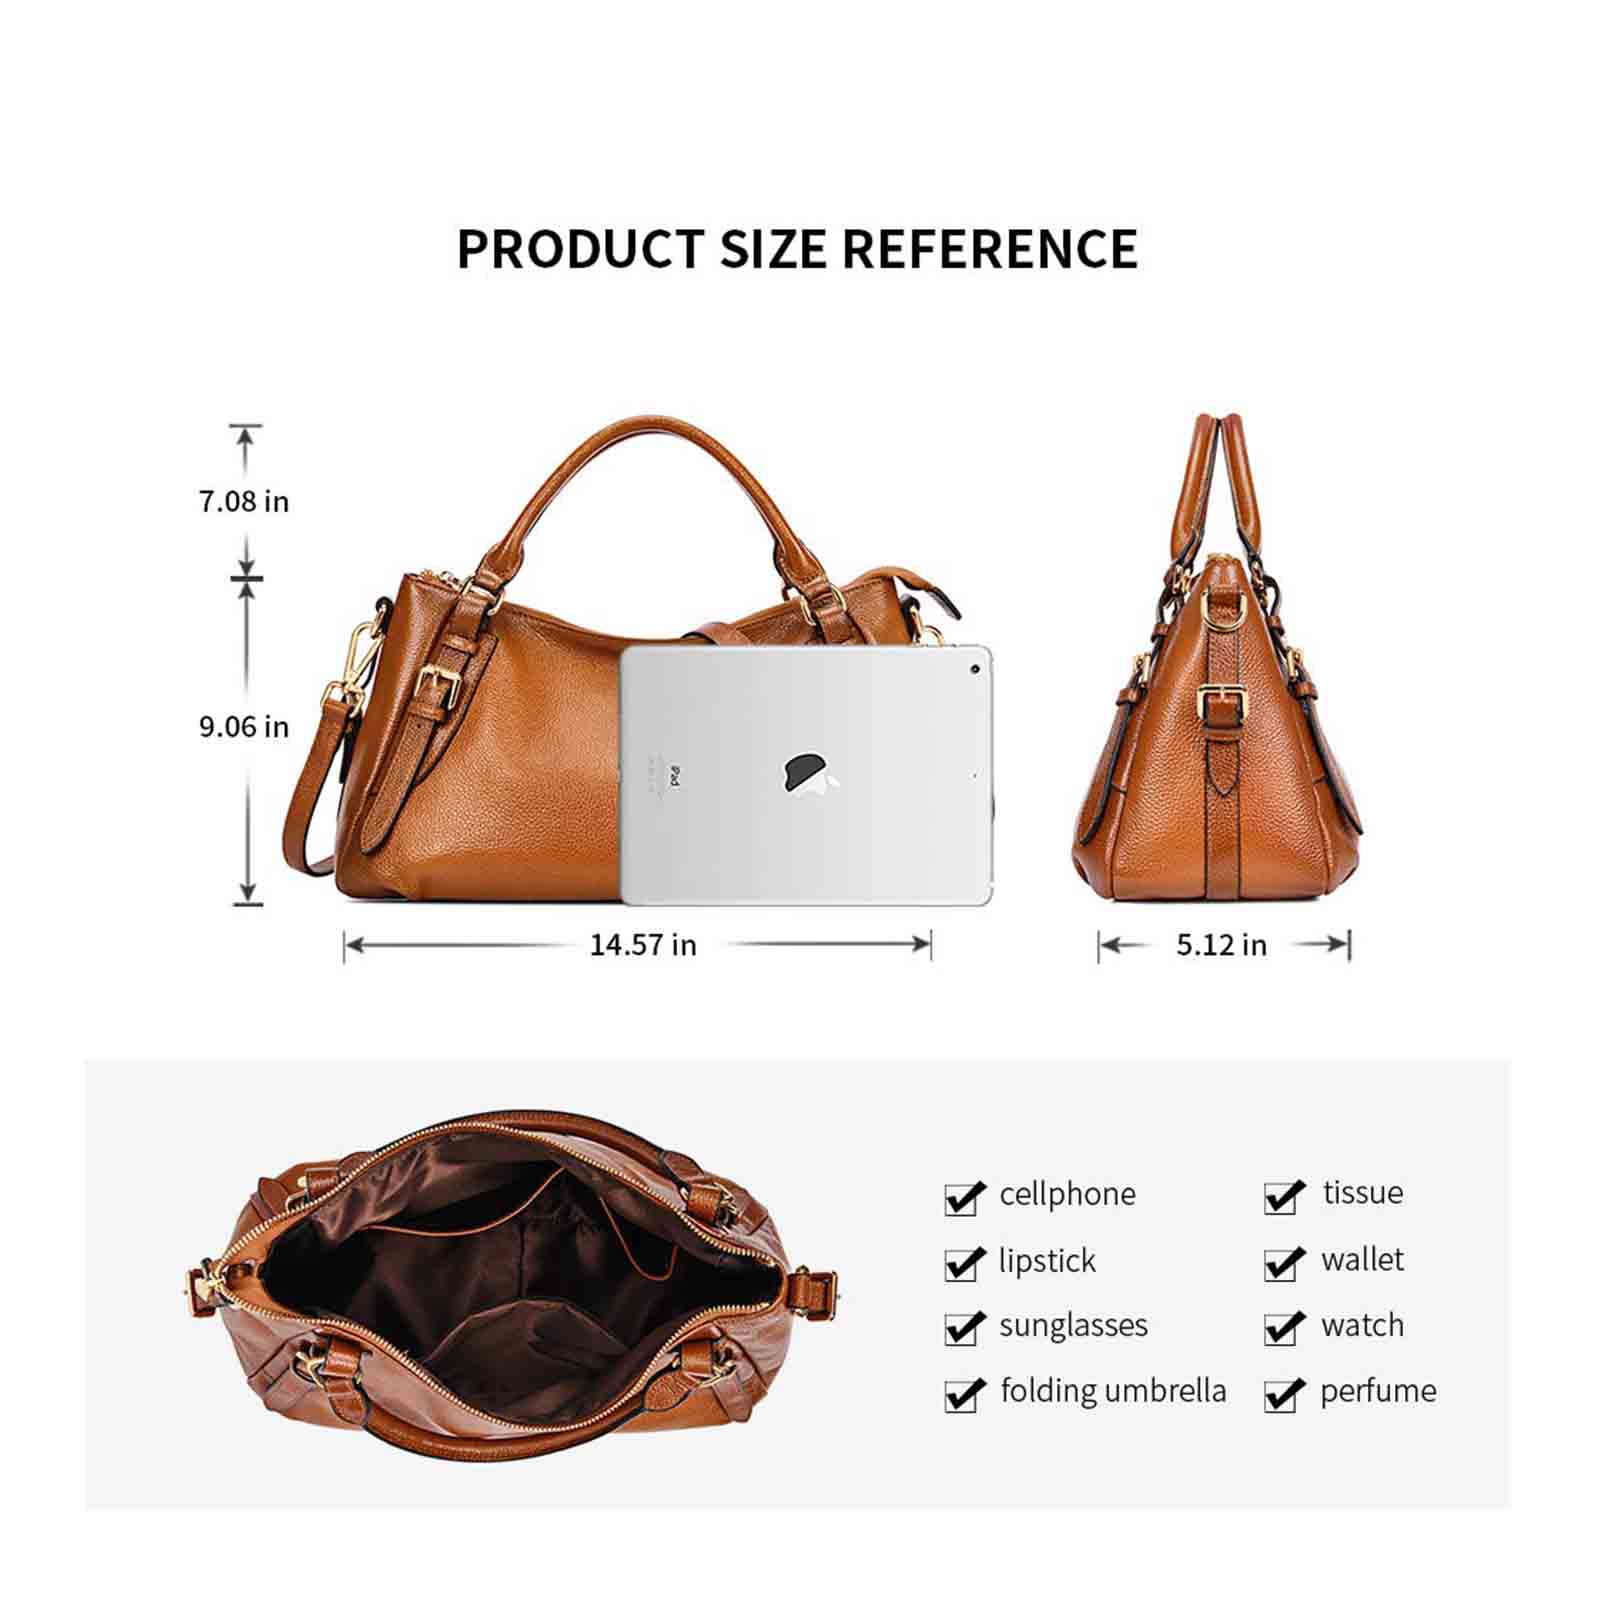 leather handbag for women